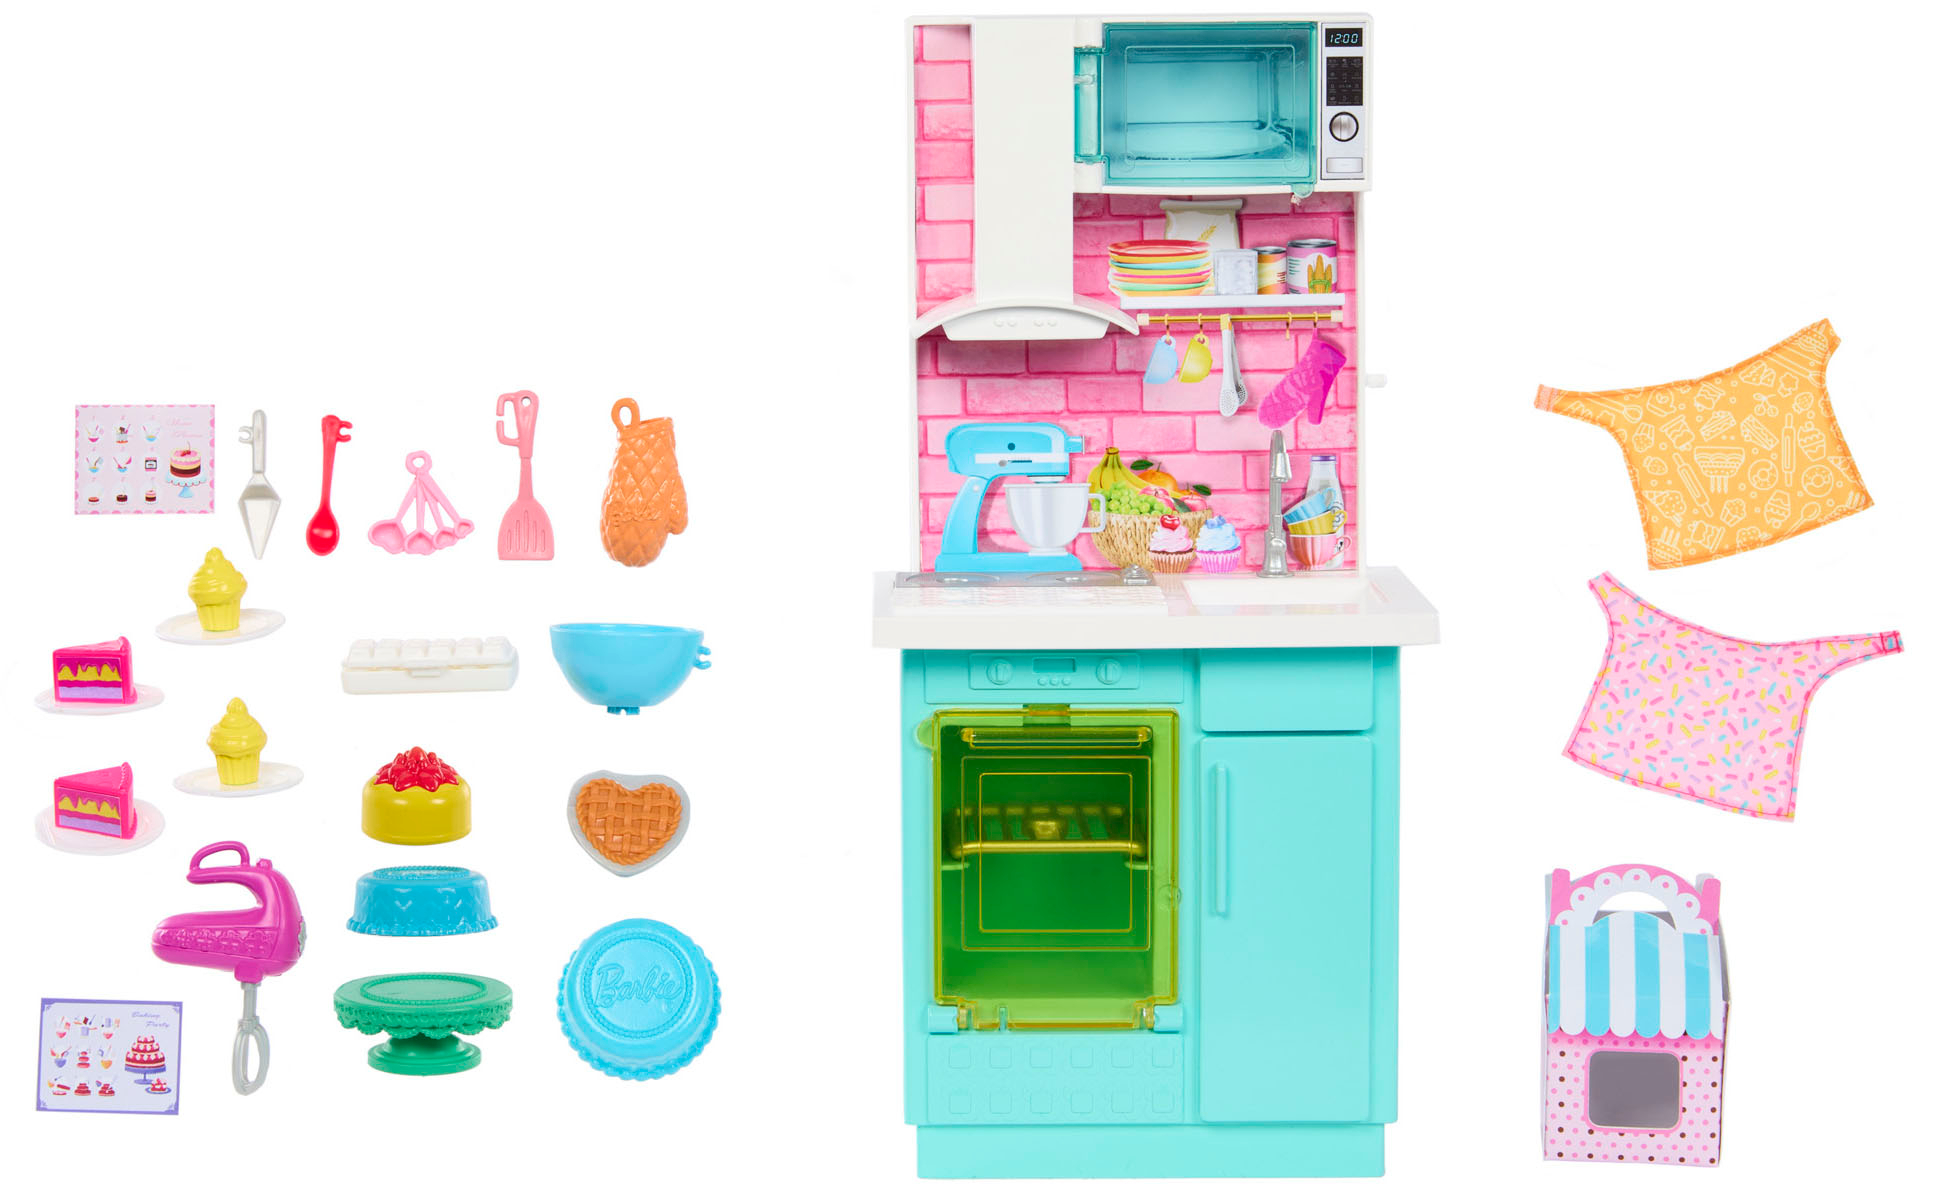 barbie doll kitchen set